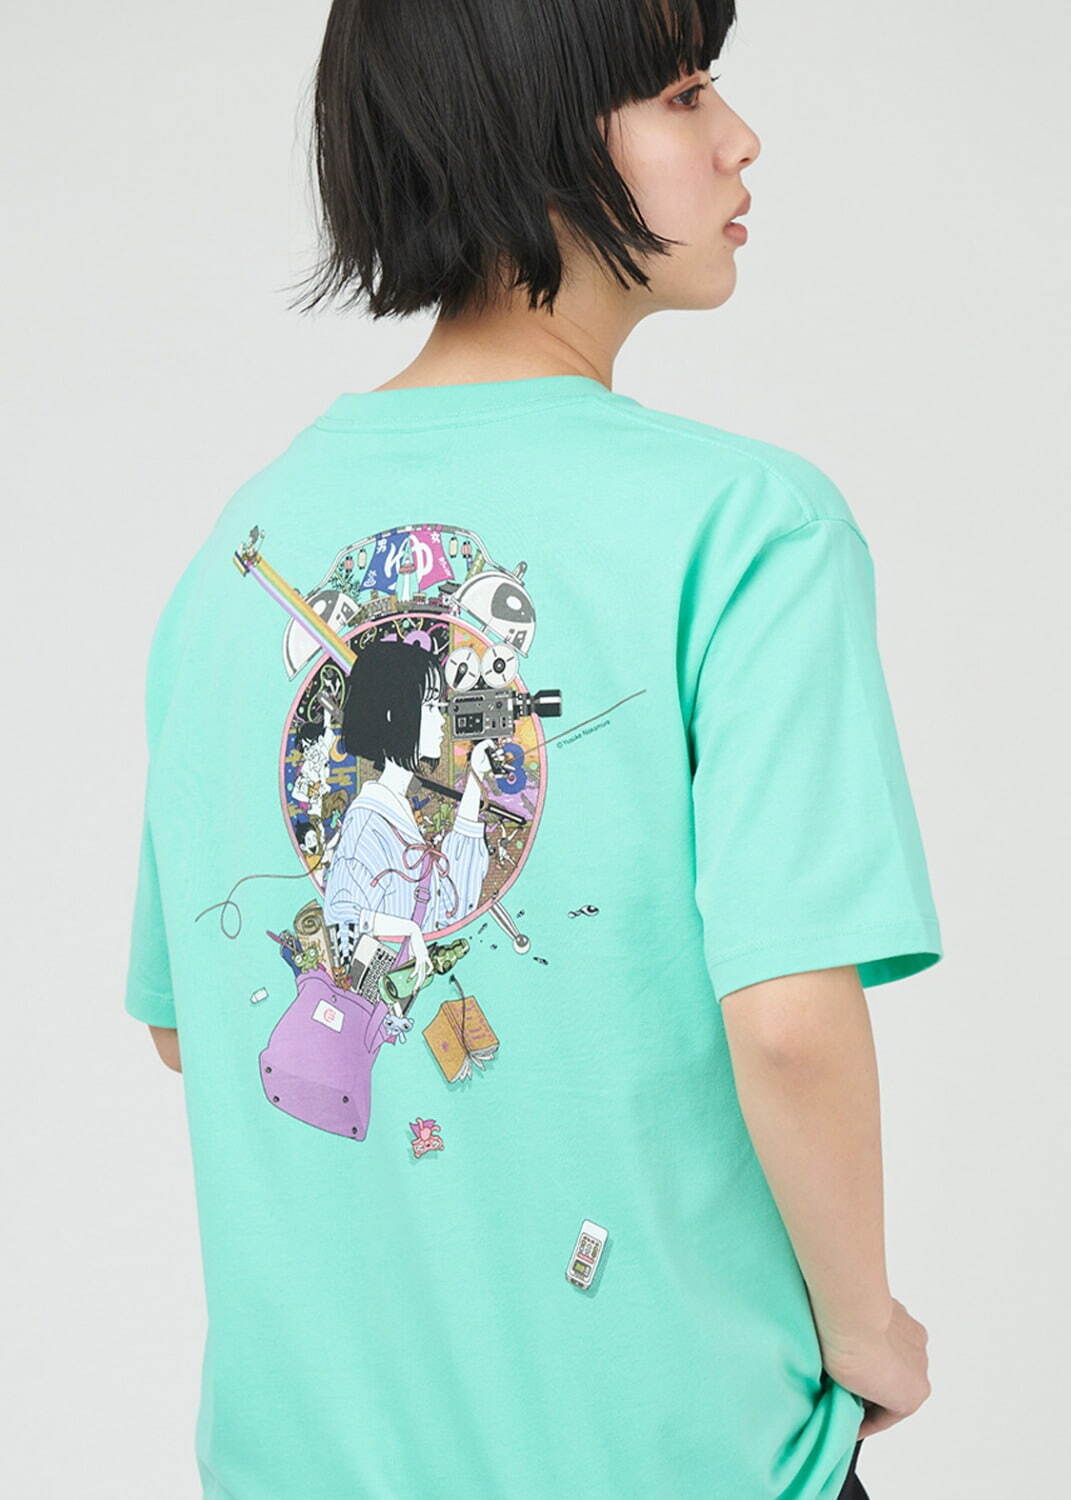 「四畳半タイムマシンブルース(中村佑介)｜Tシャツ」3,500円